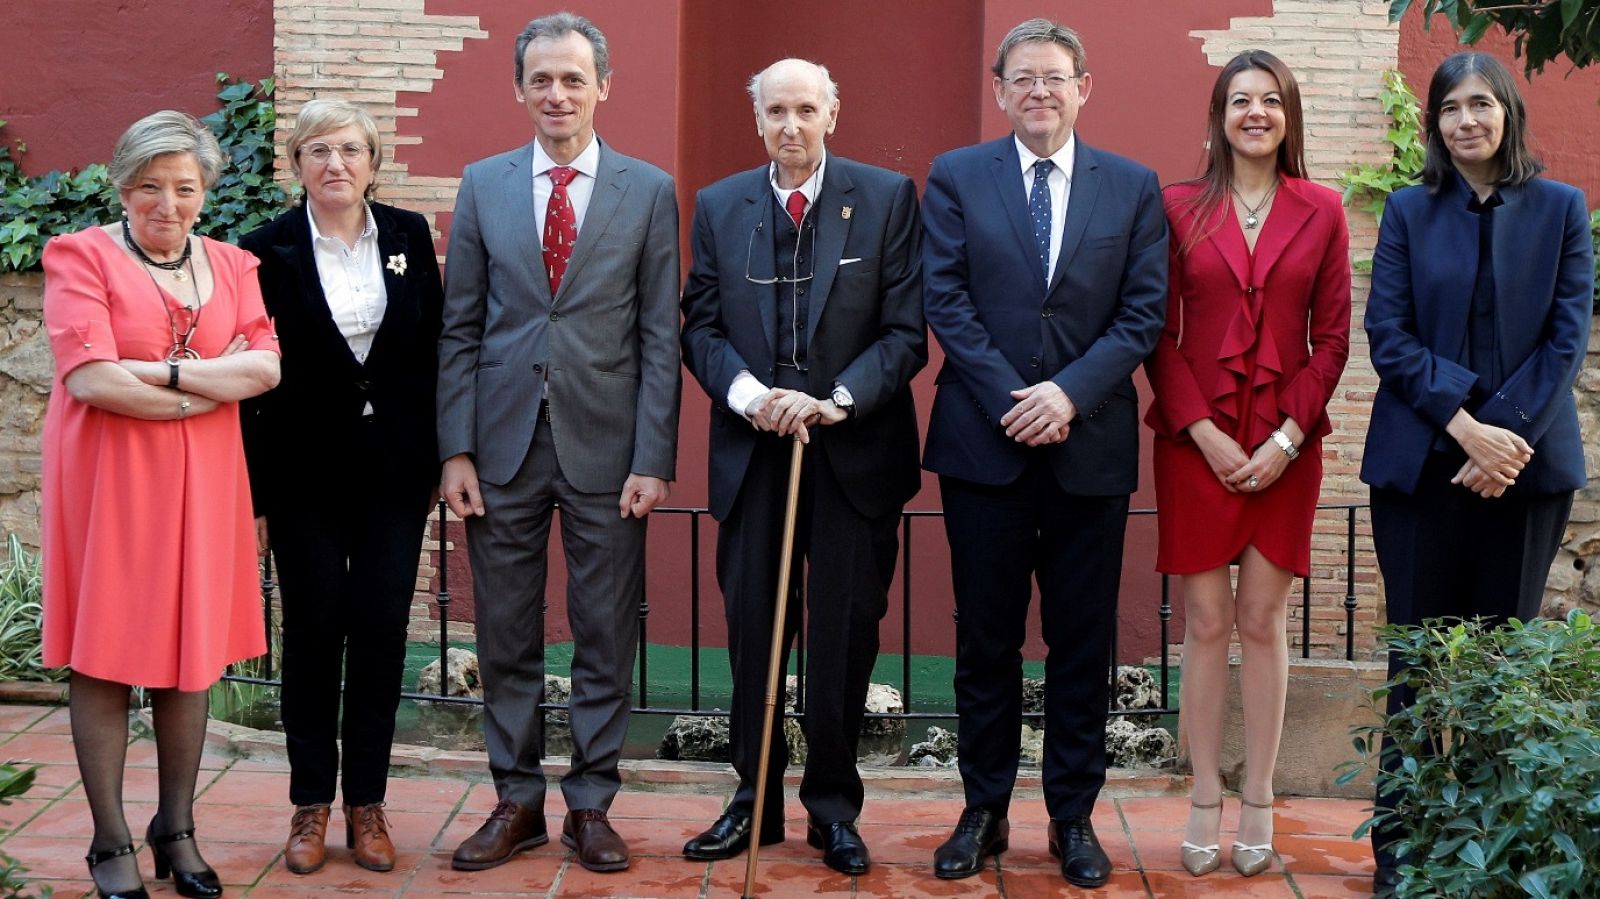 L'Informatiu - Comunitat Valenciana - 10/02/20 - RTVE.es